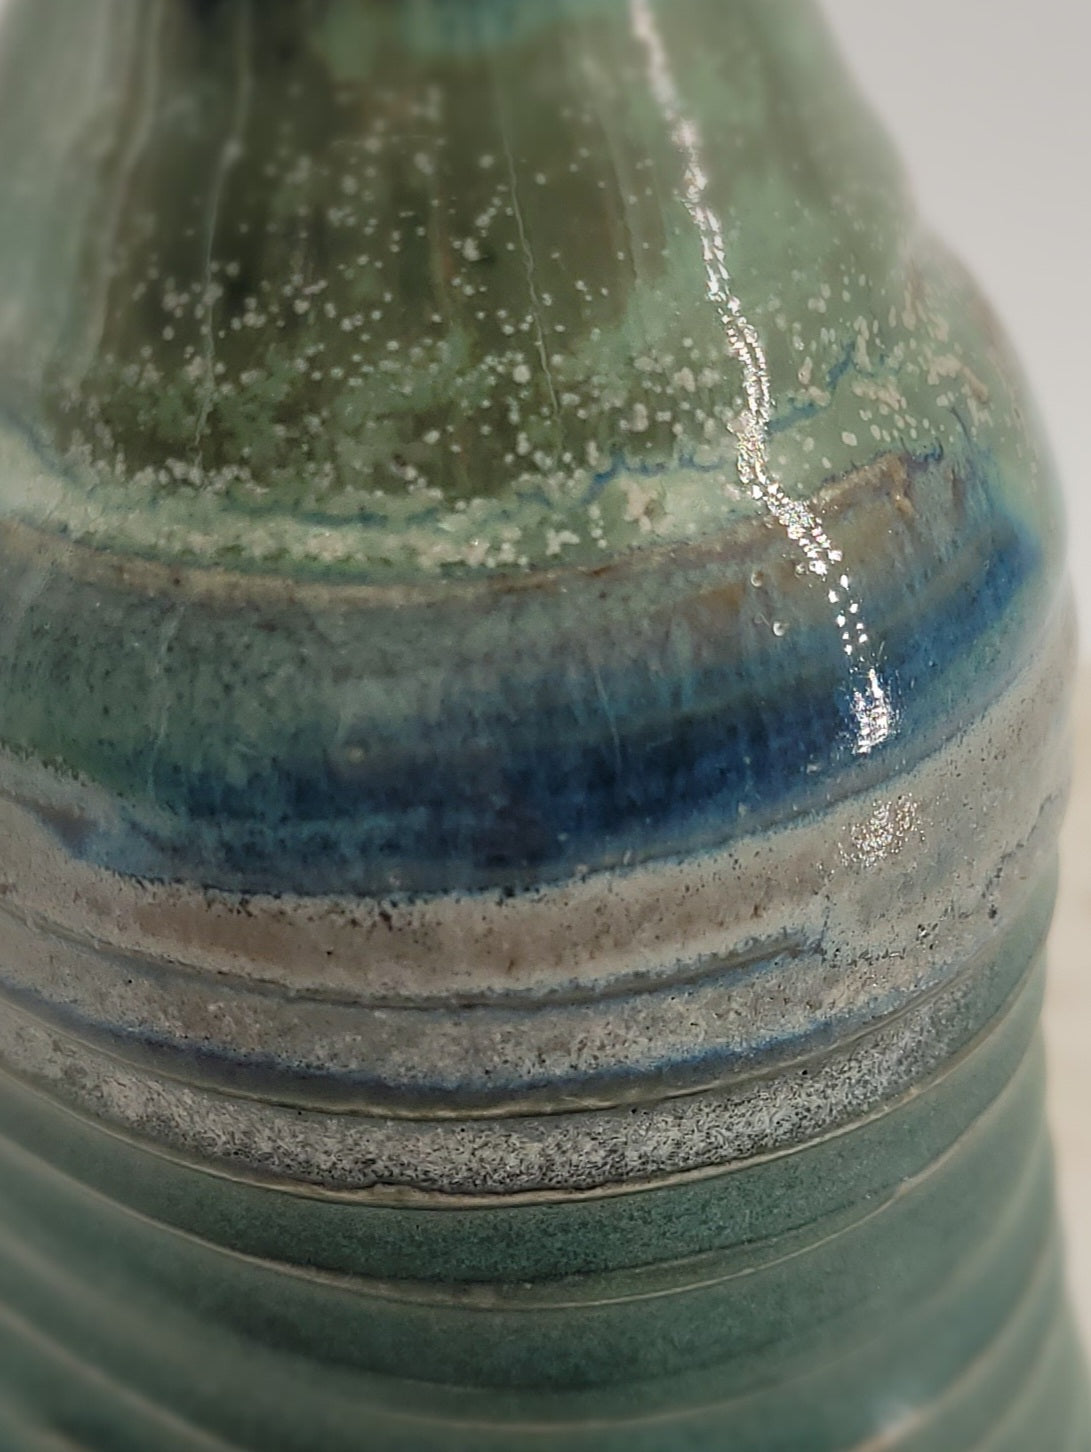 Oil/Soap Bottle - Bud Vase #3